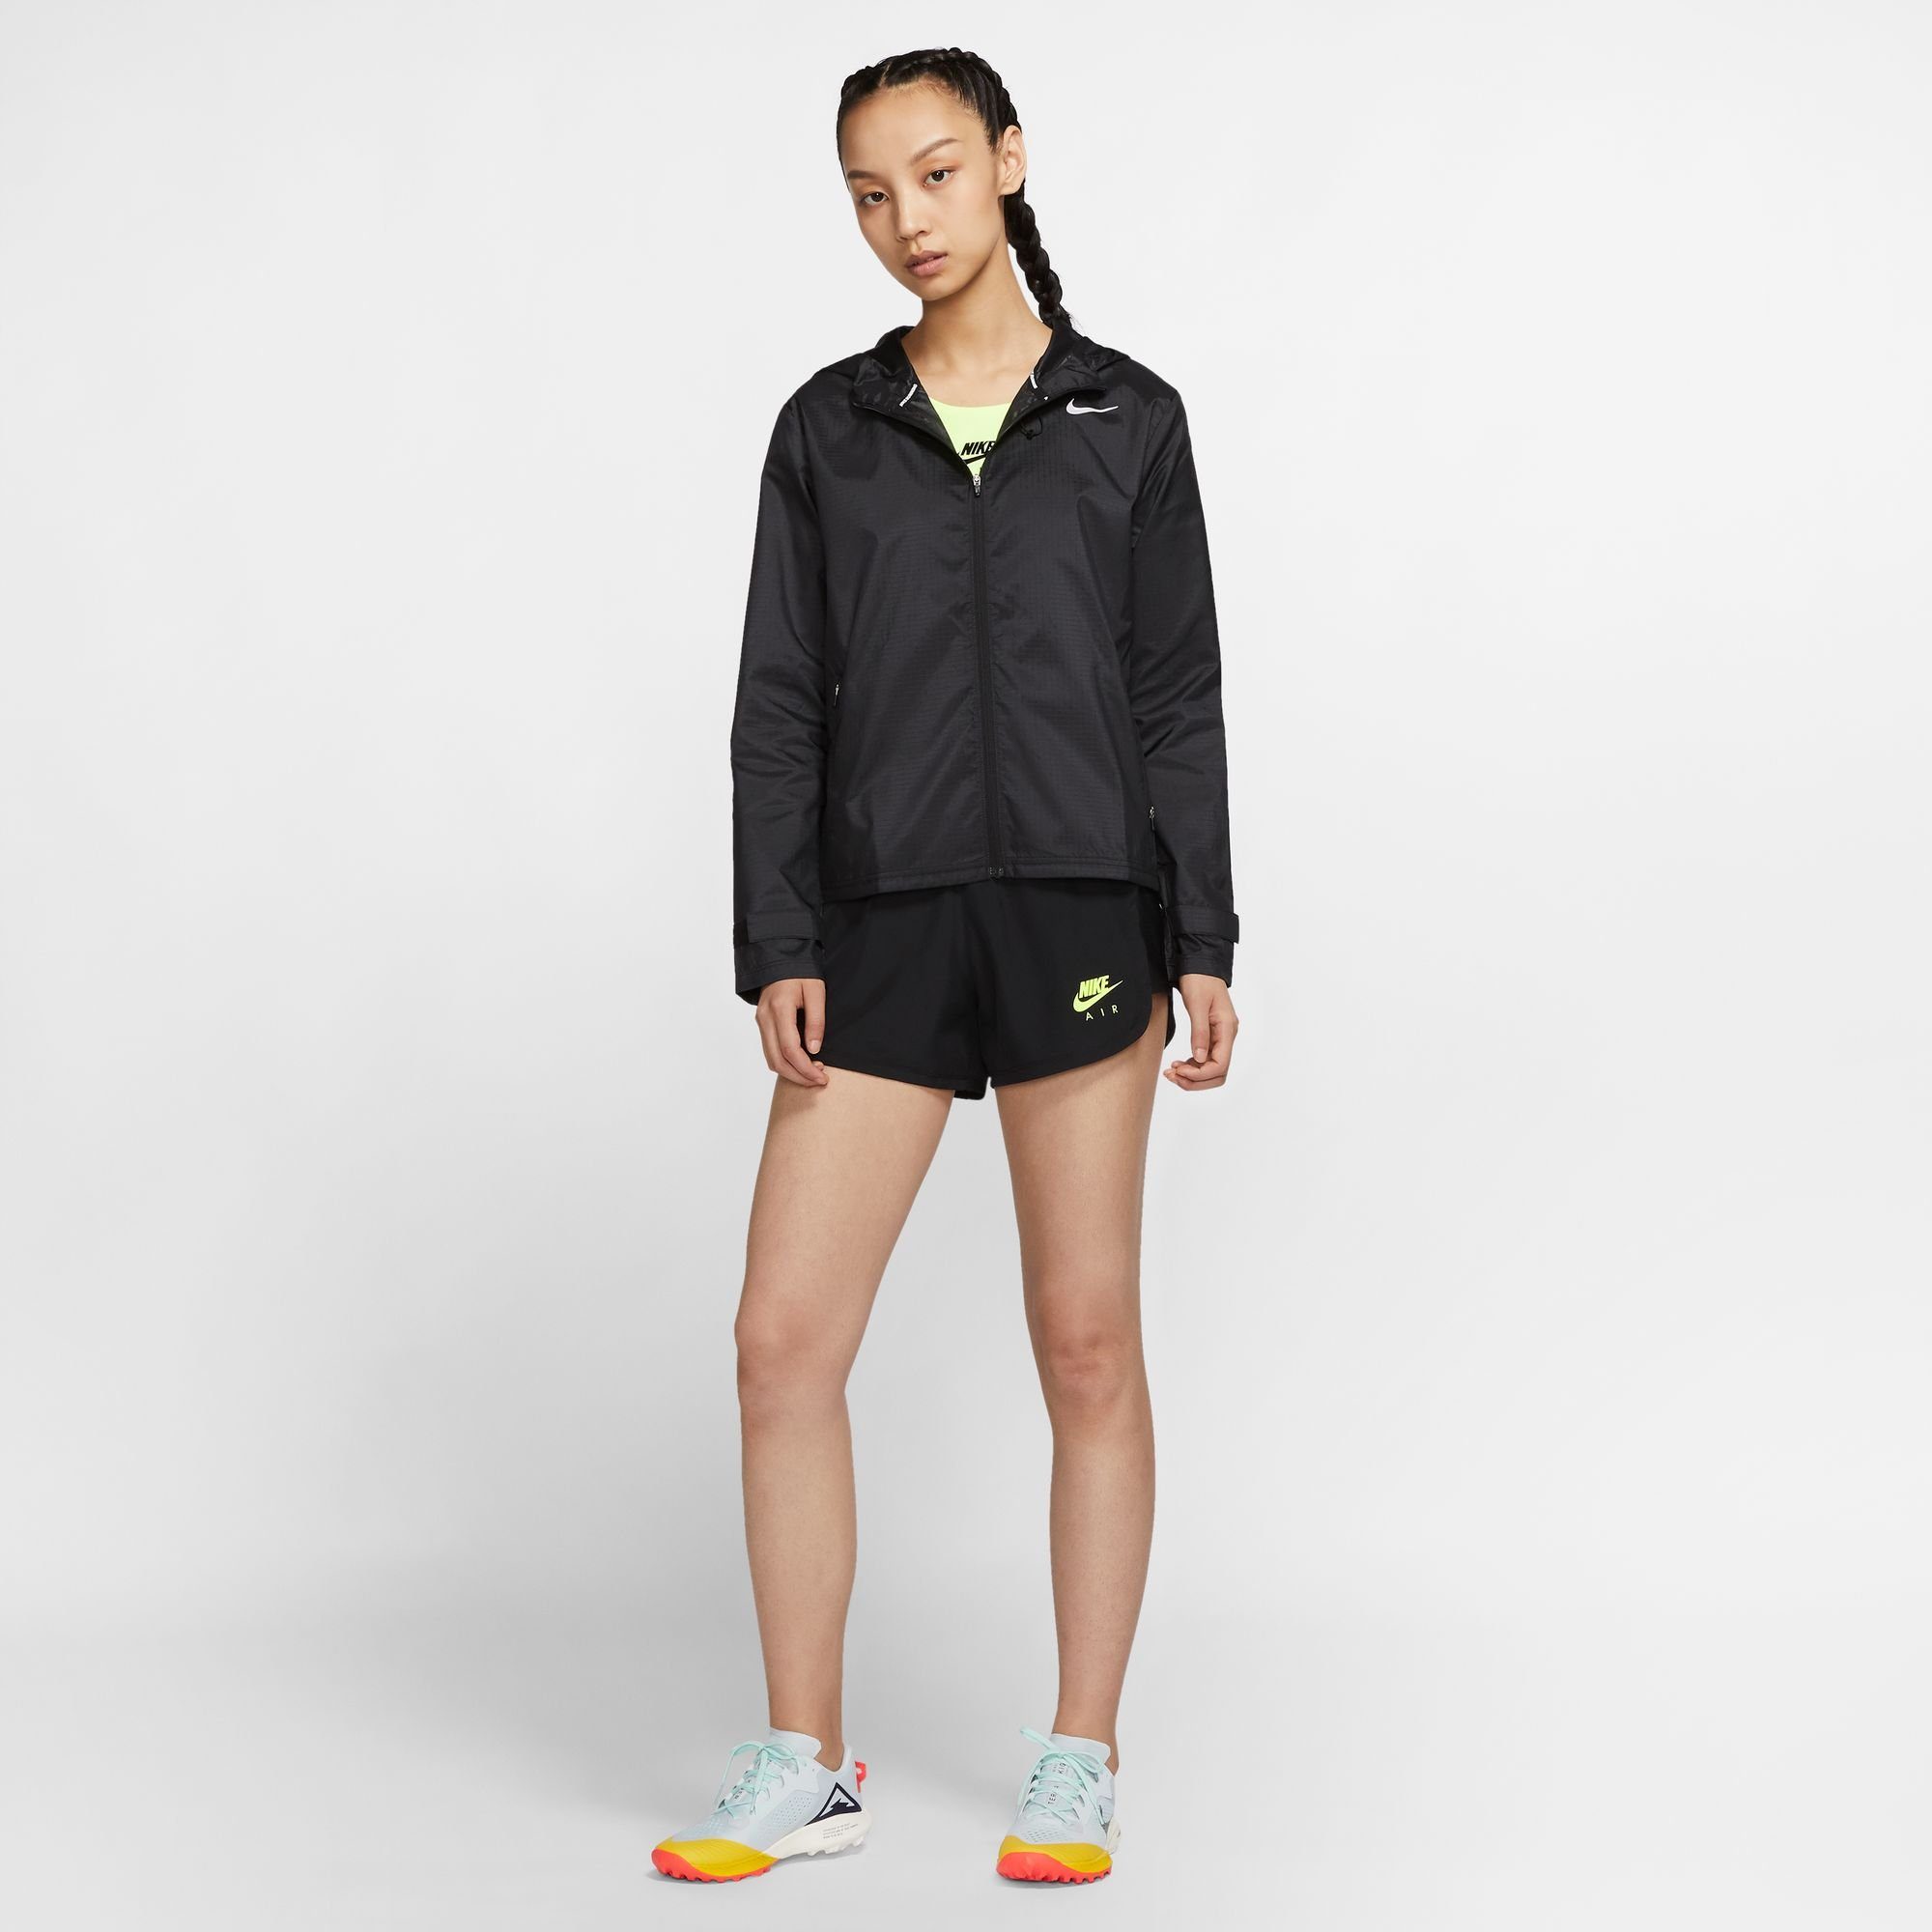 Women's Jacket Nike Essential Laufjacke Running schwarz